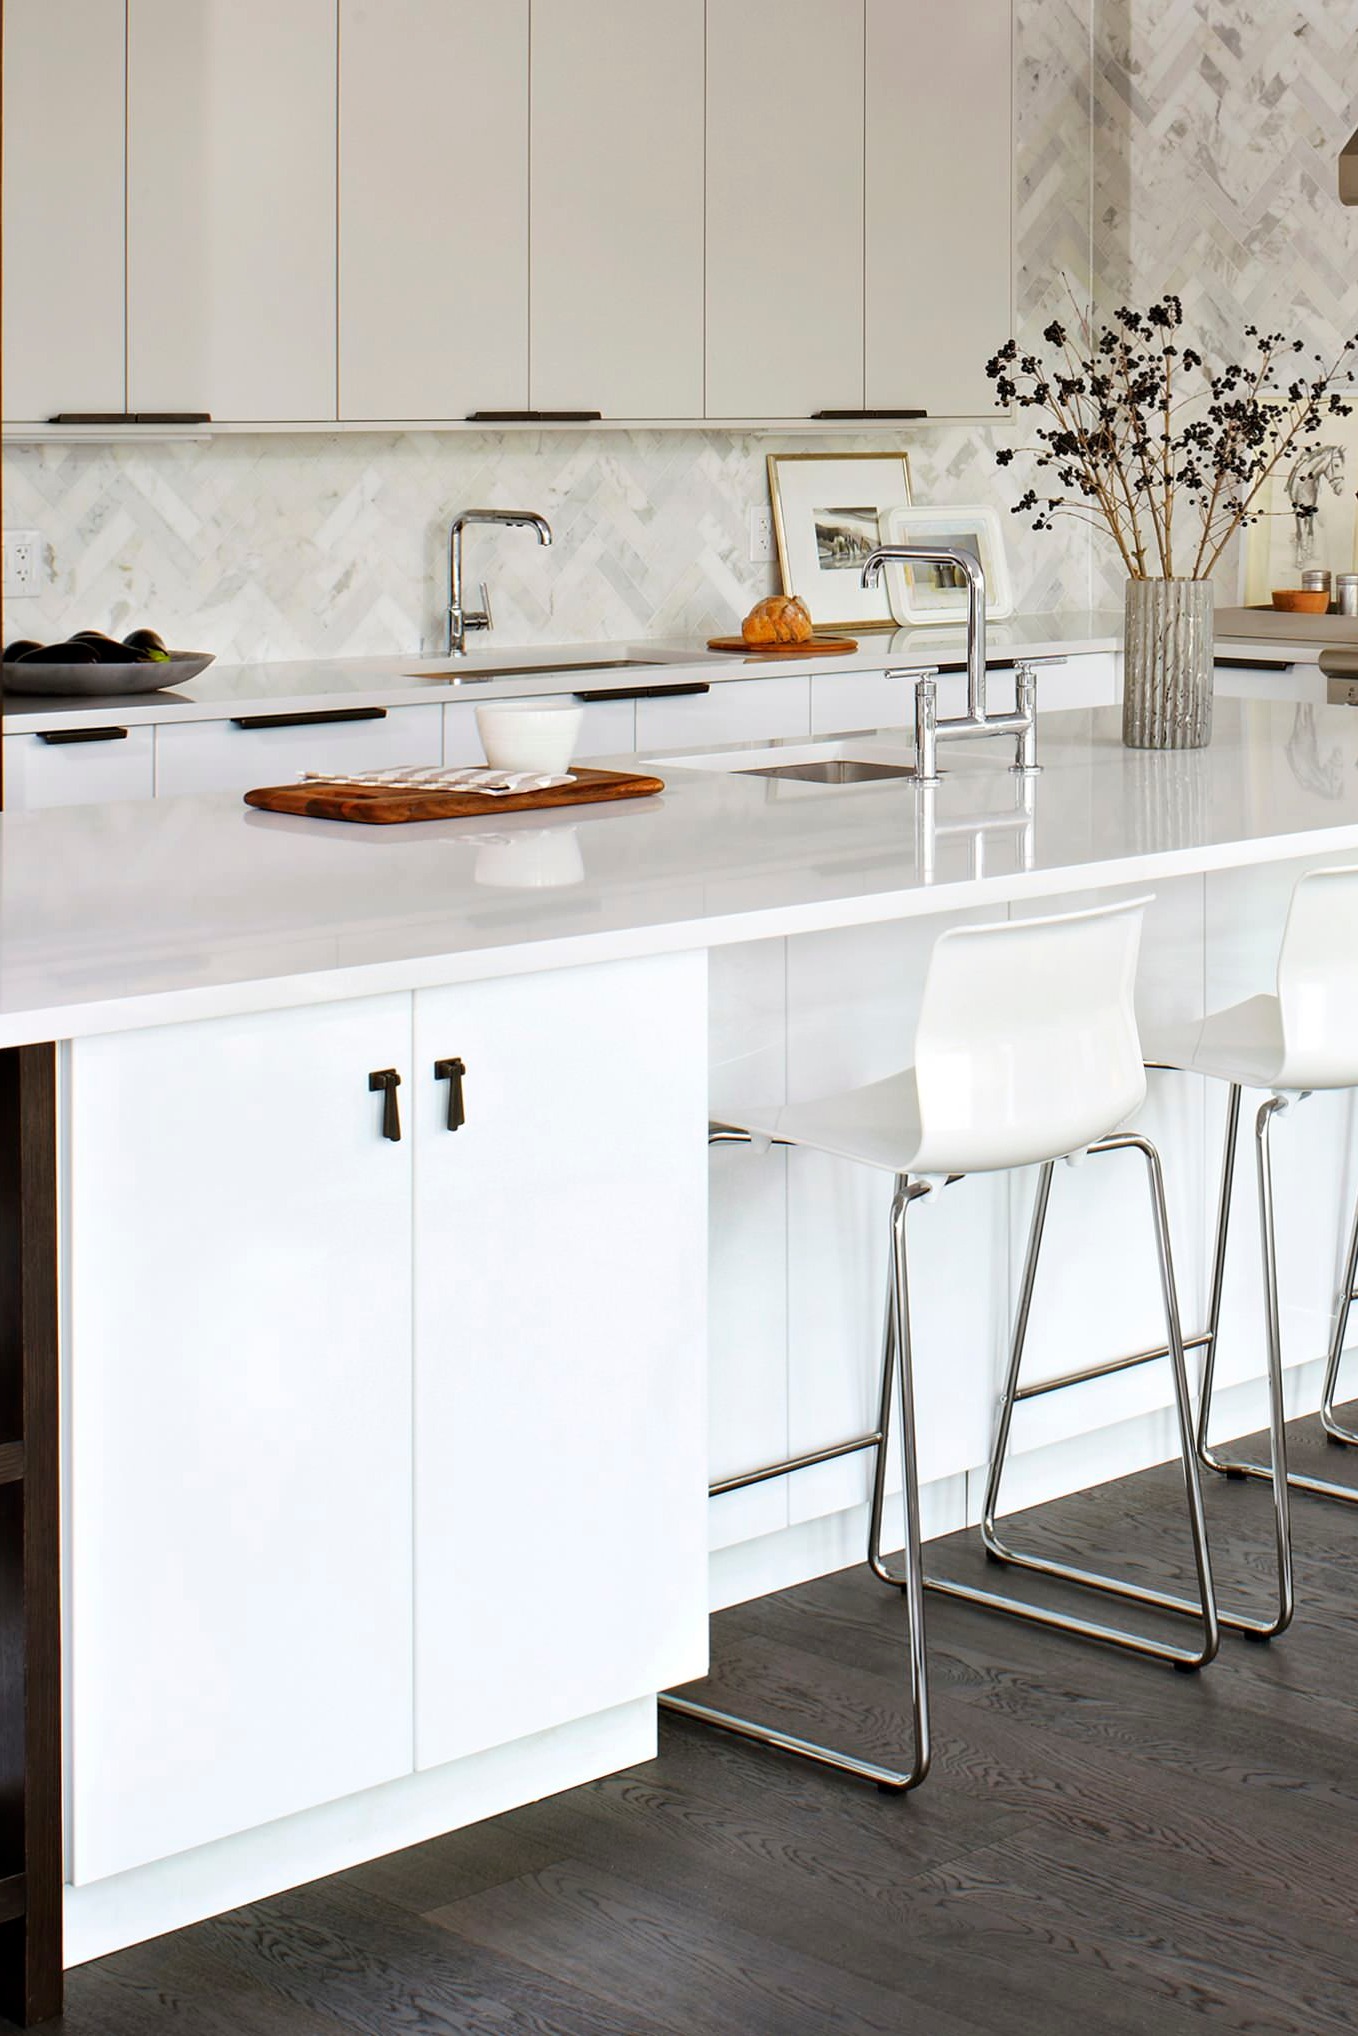 White Kitchen Cabinets Quartz Countertops Backsplash Tiles Shiny Dark Wood Floors